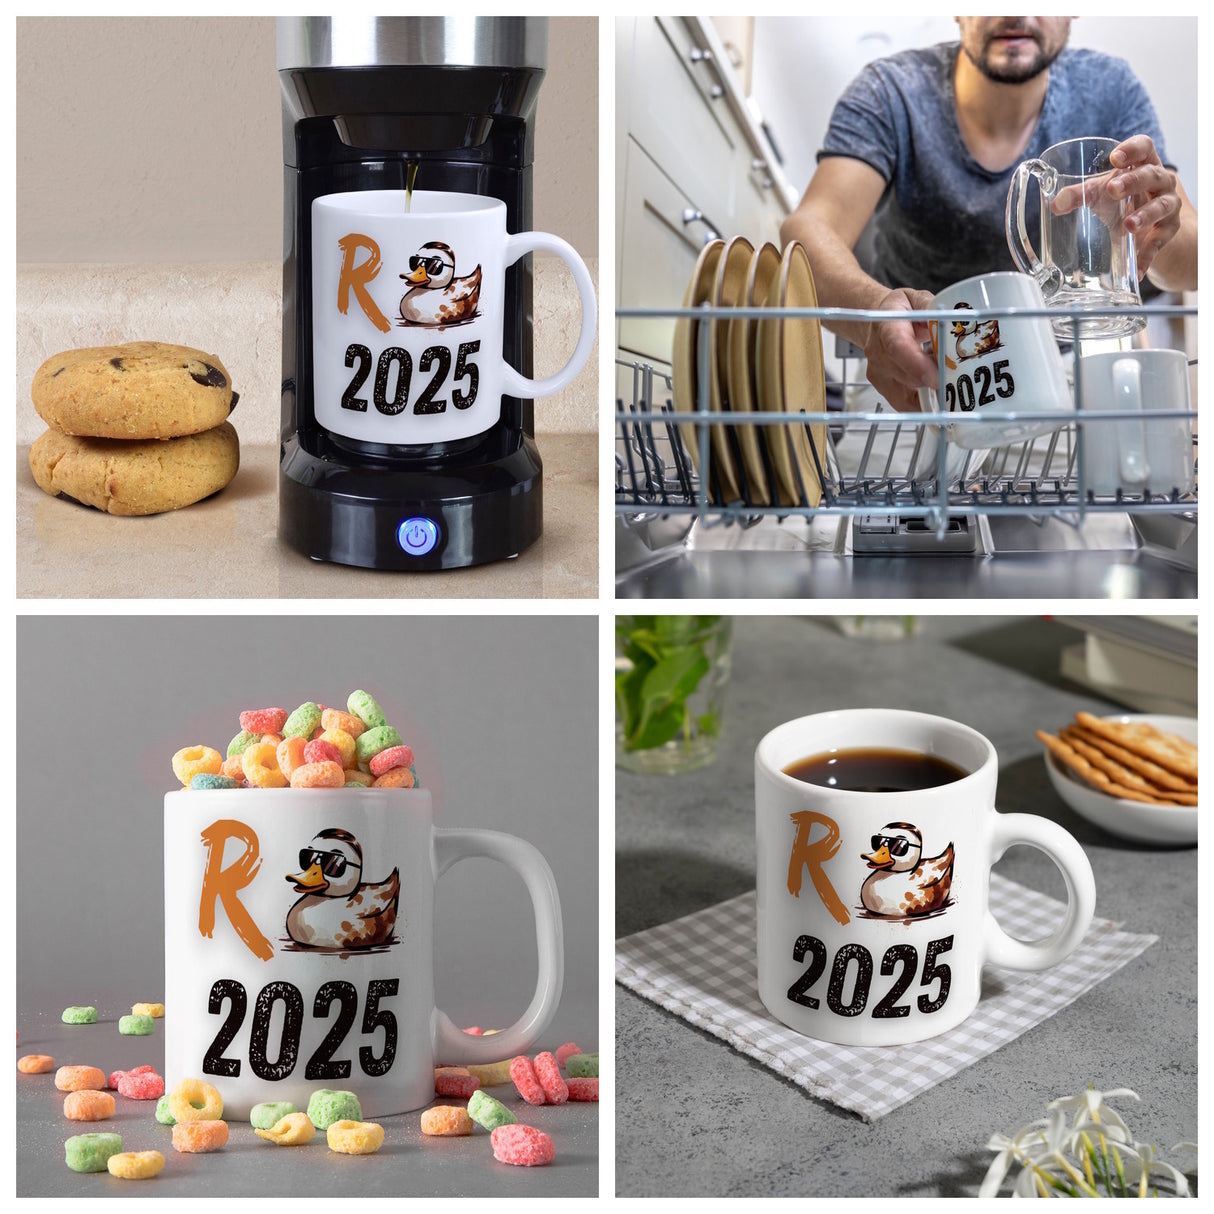 Ente mit Sonnenbrille Kaffeebecher mit Spruch Rente 2025